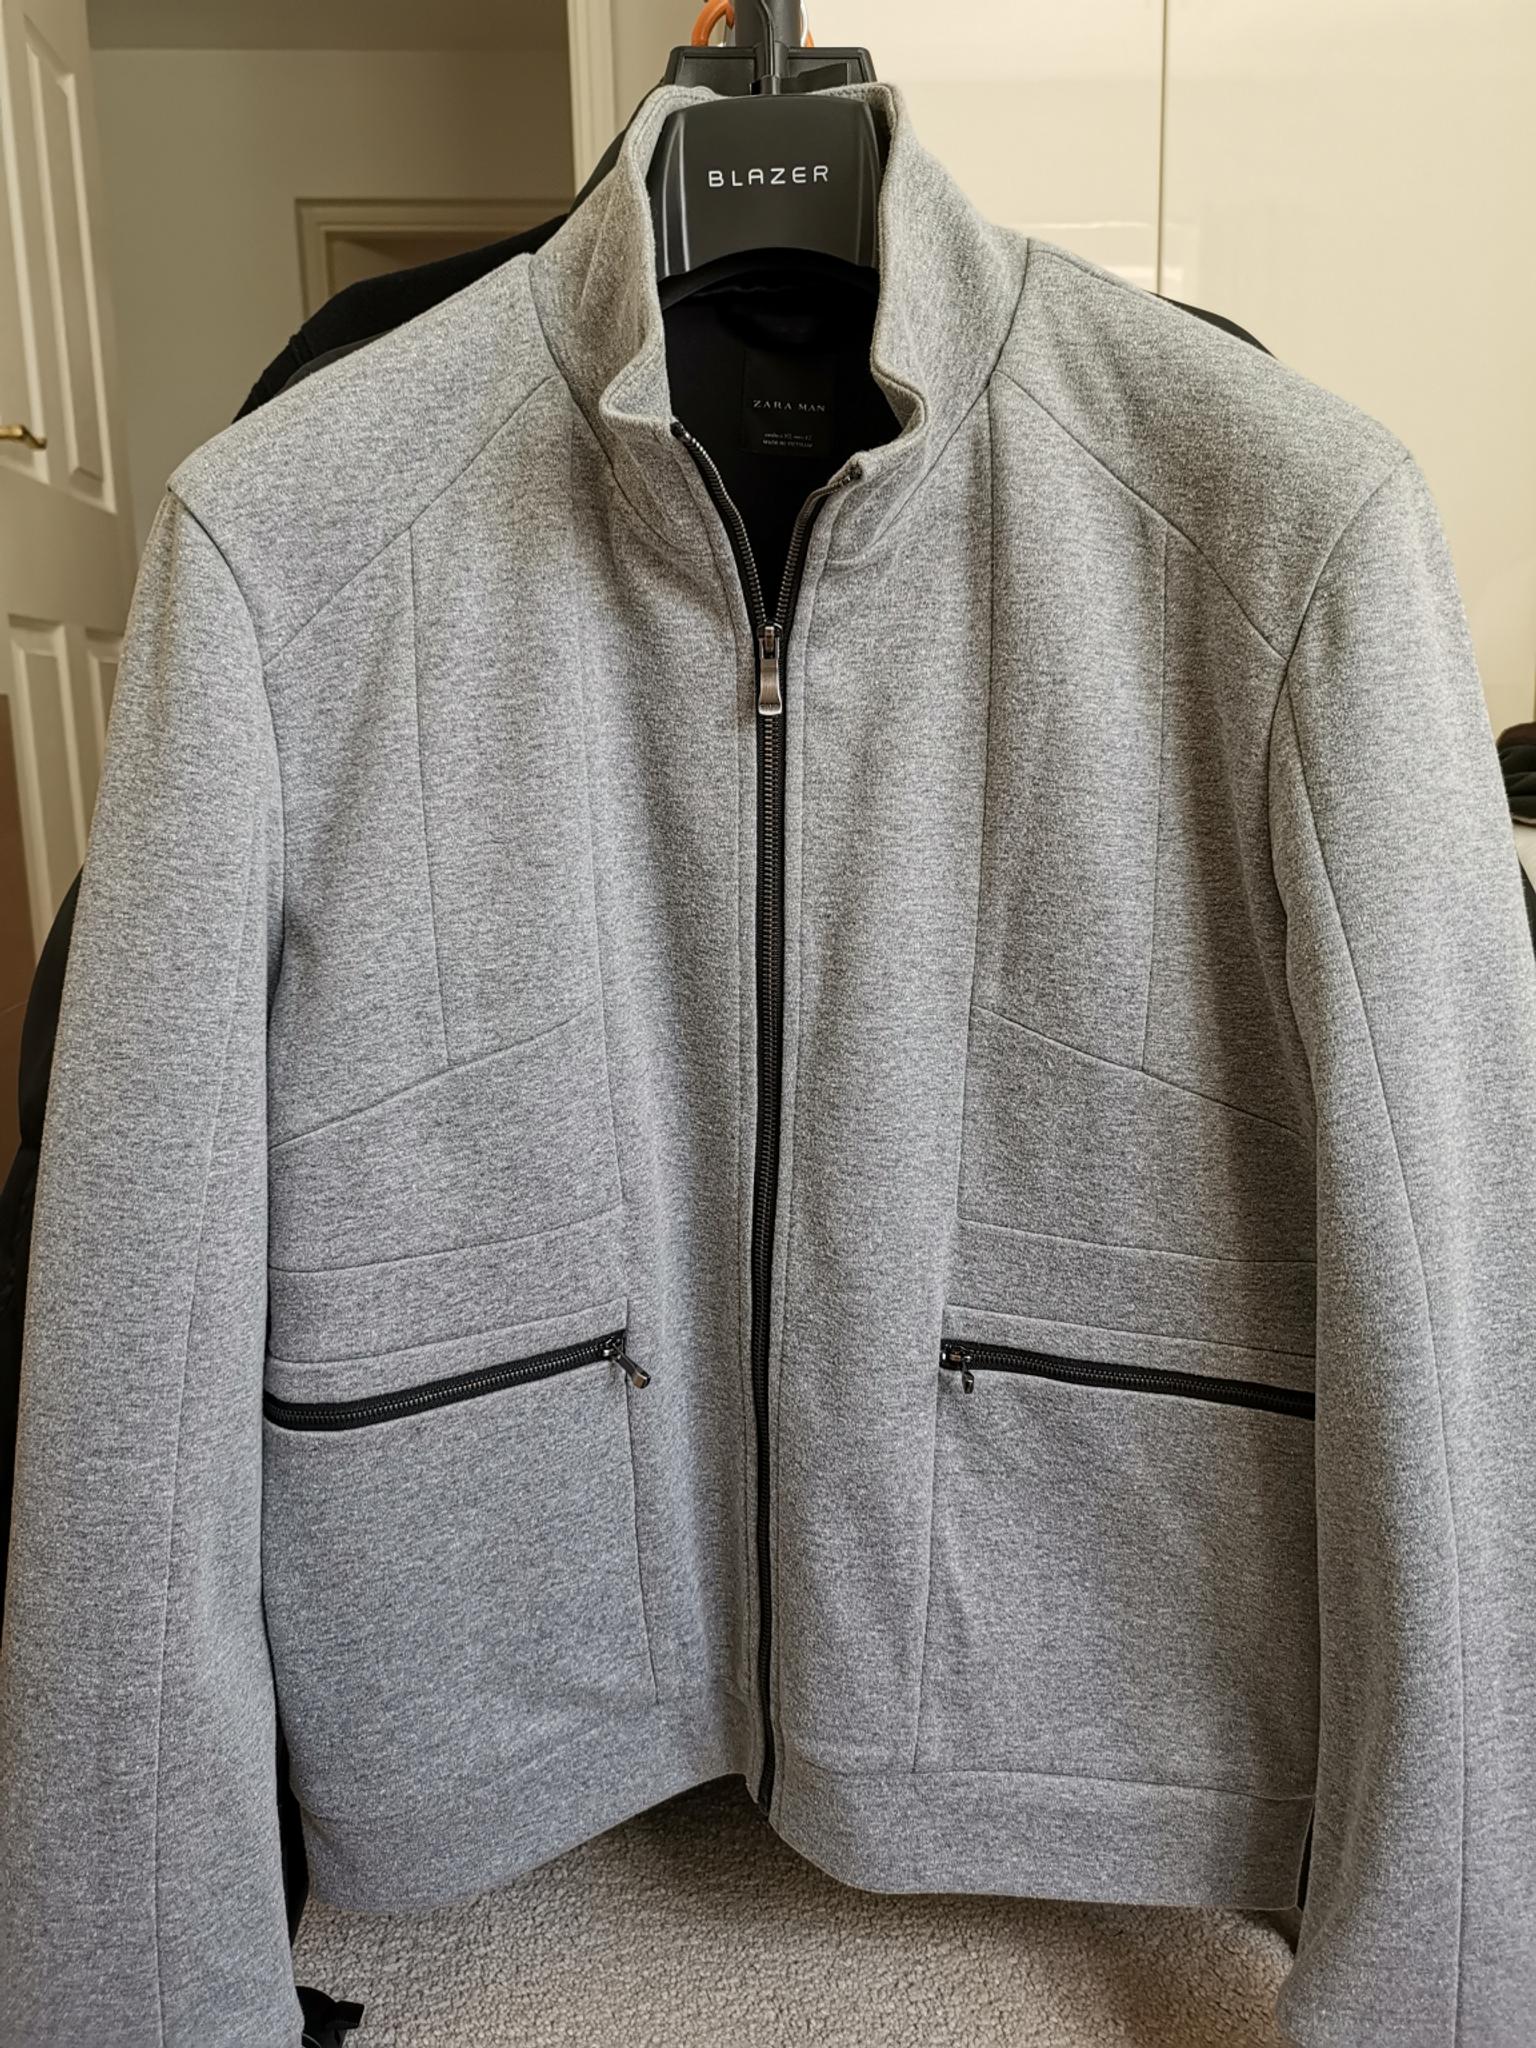 ZARA Man - Grey Jacket (Men's) in LS15 